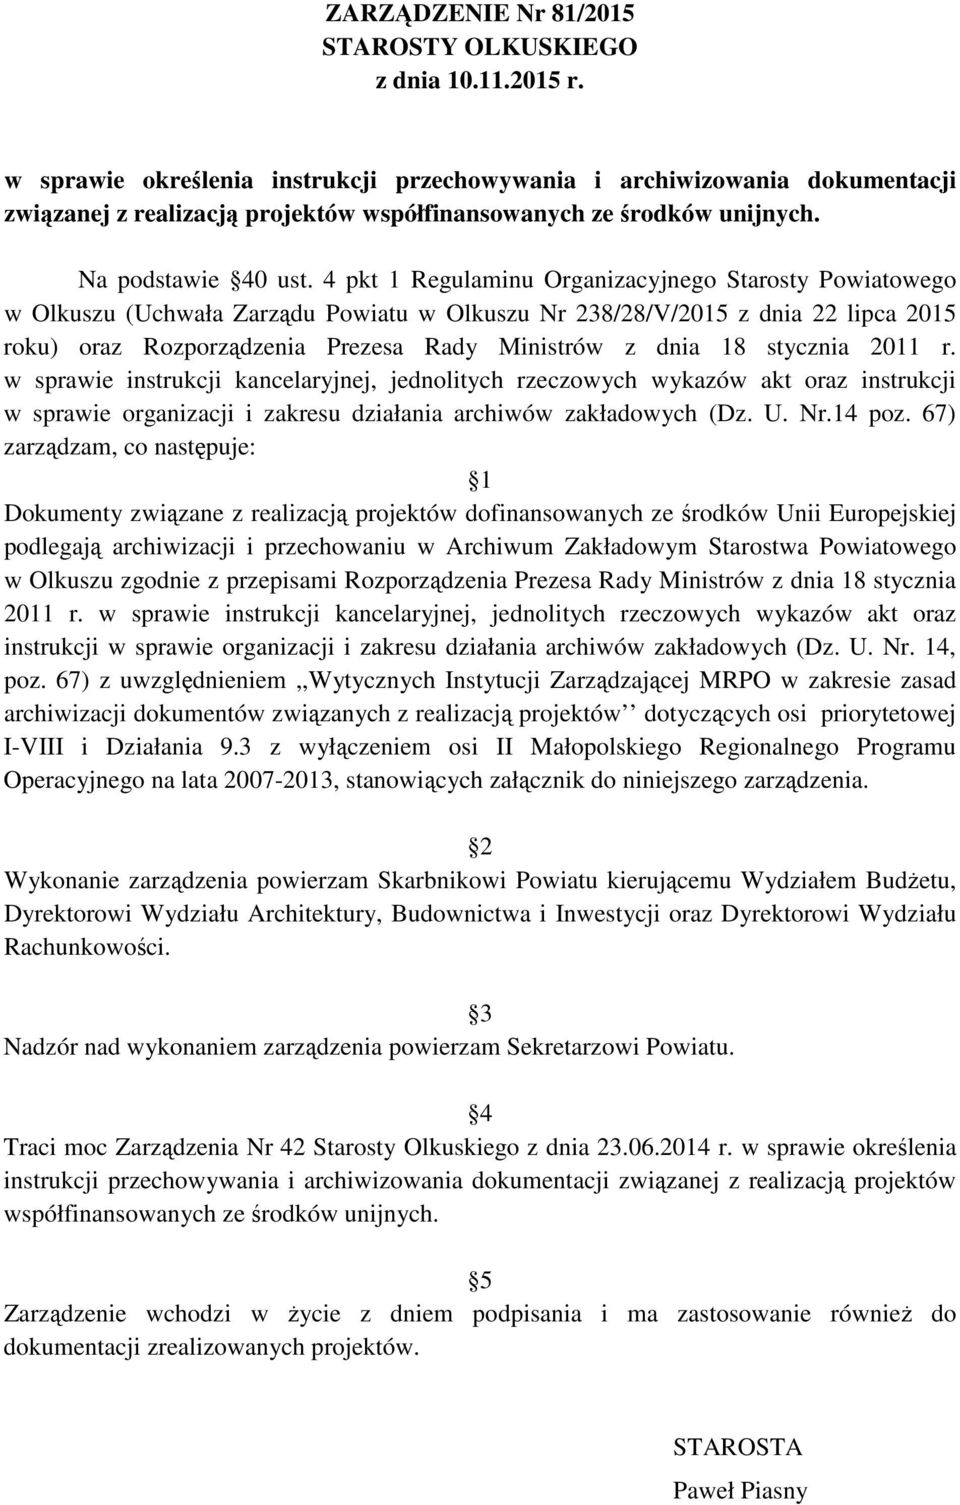 4 pkt 1 Regulaminu Organizacyjnego Starosty Powiatowego w Olkuszu (Uchwała Zarządu Powiatu w Olkuszu Nr 238/28/V/2015 z dnia 22 lipca 2015 roku) oraz Rozporządzenia Prezesa Rady Ministrów z dnia 18